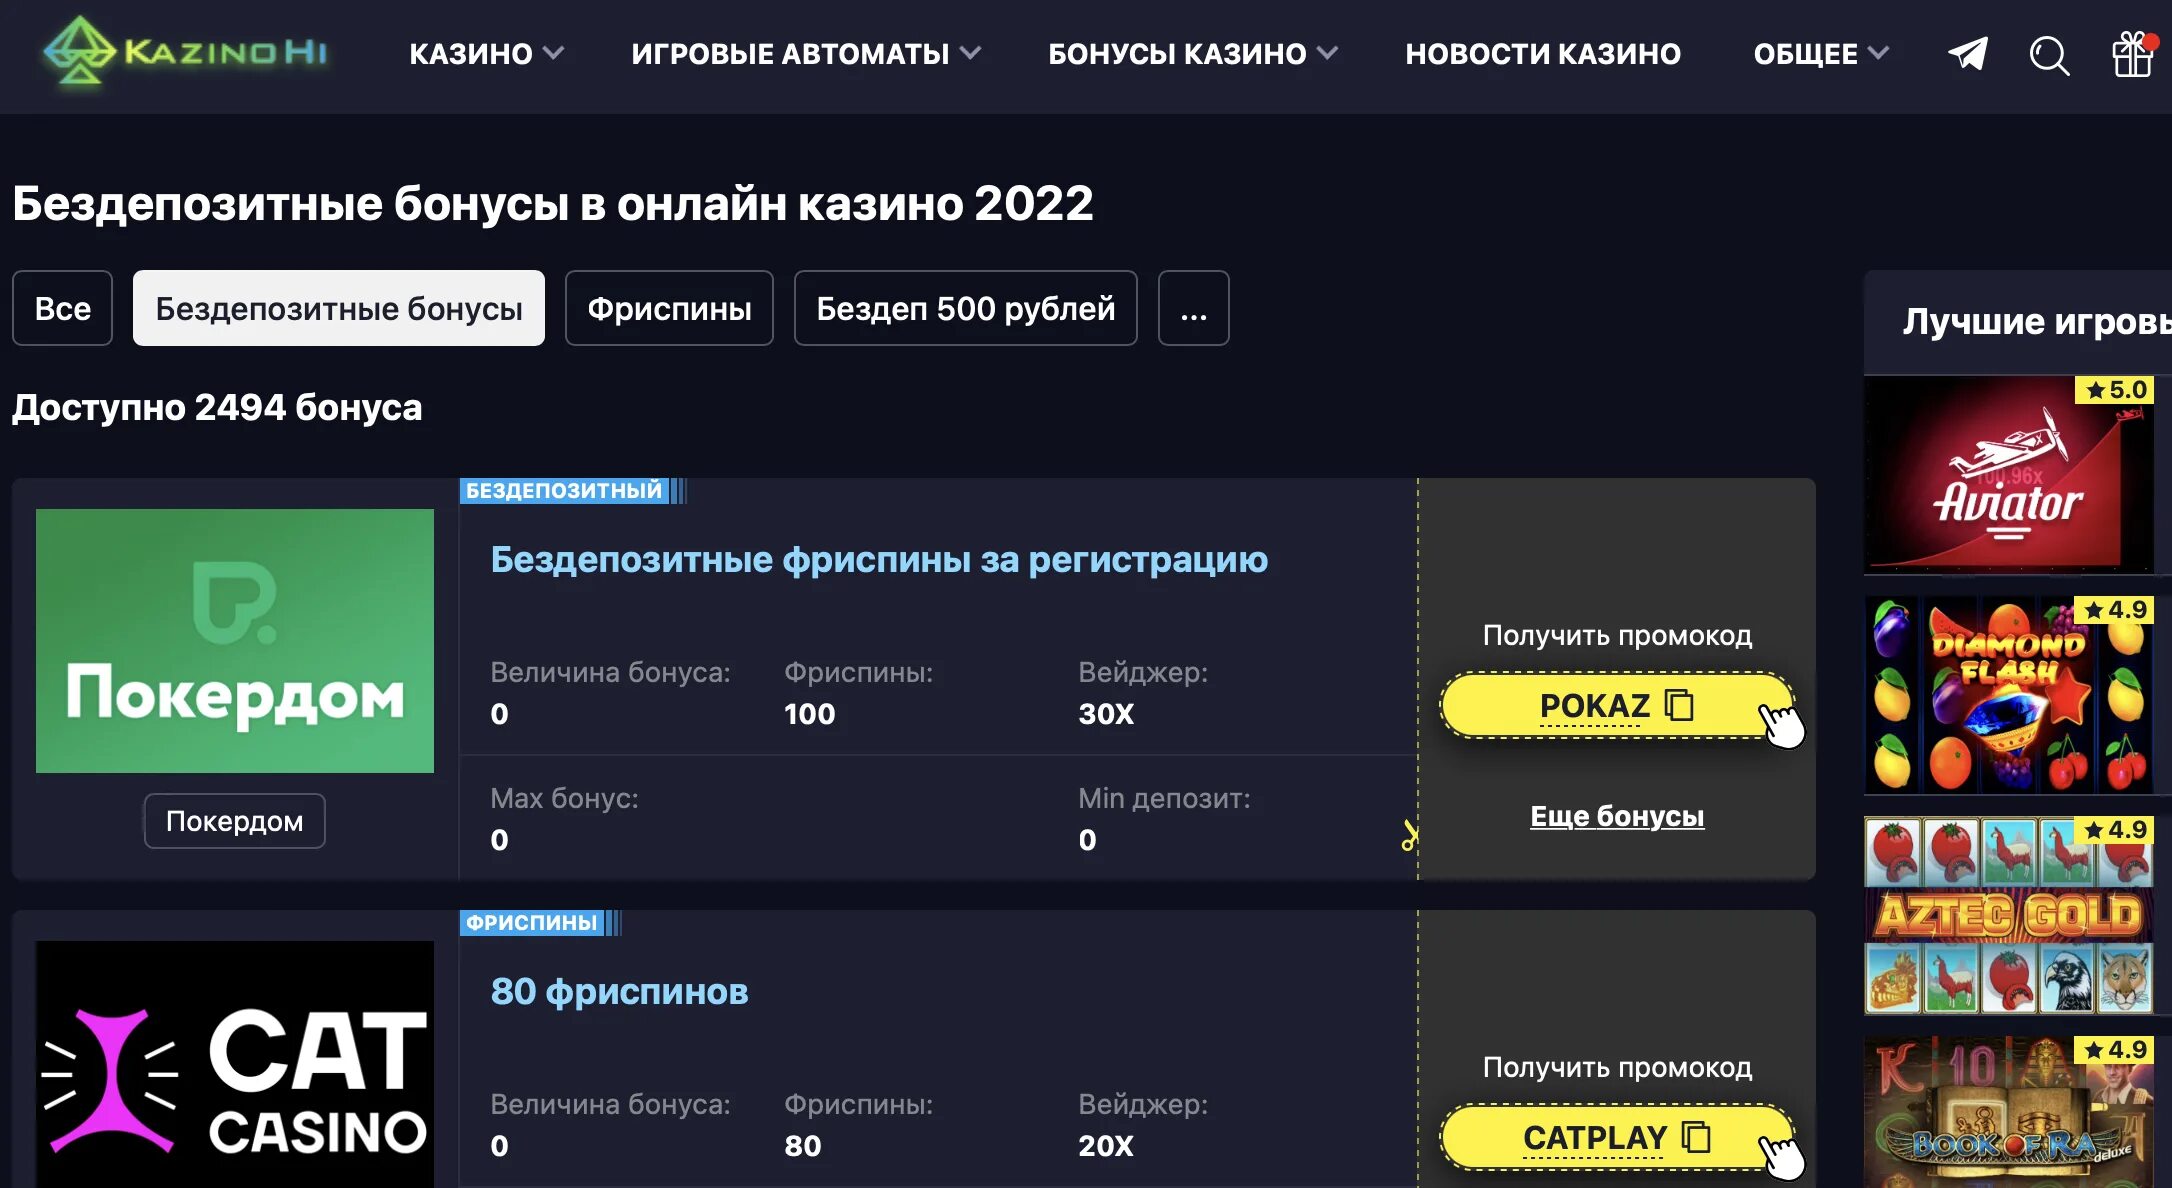 Игровые автоматы на рубли с депозитом 5. Бездепозитные бонусы казино. Бездепозитные бонусы в интернет казино.